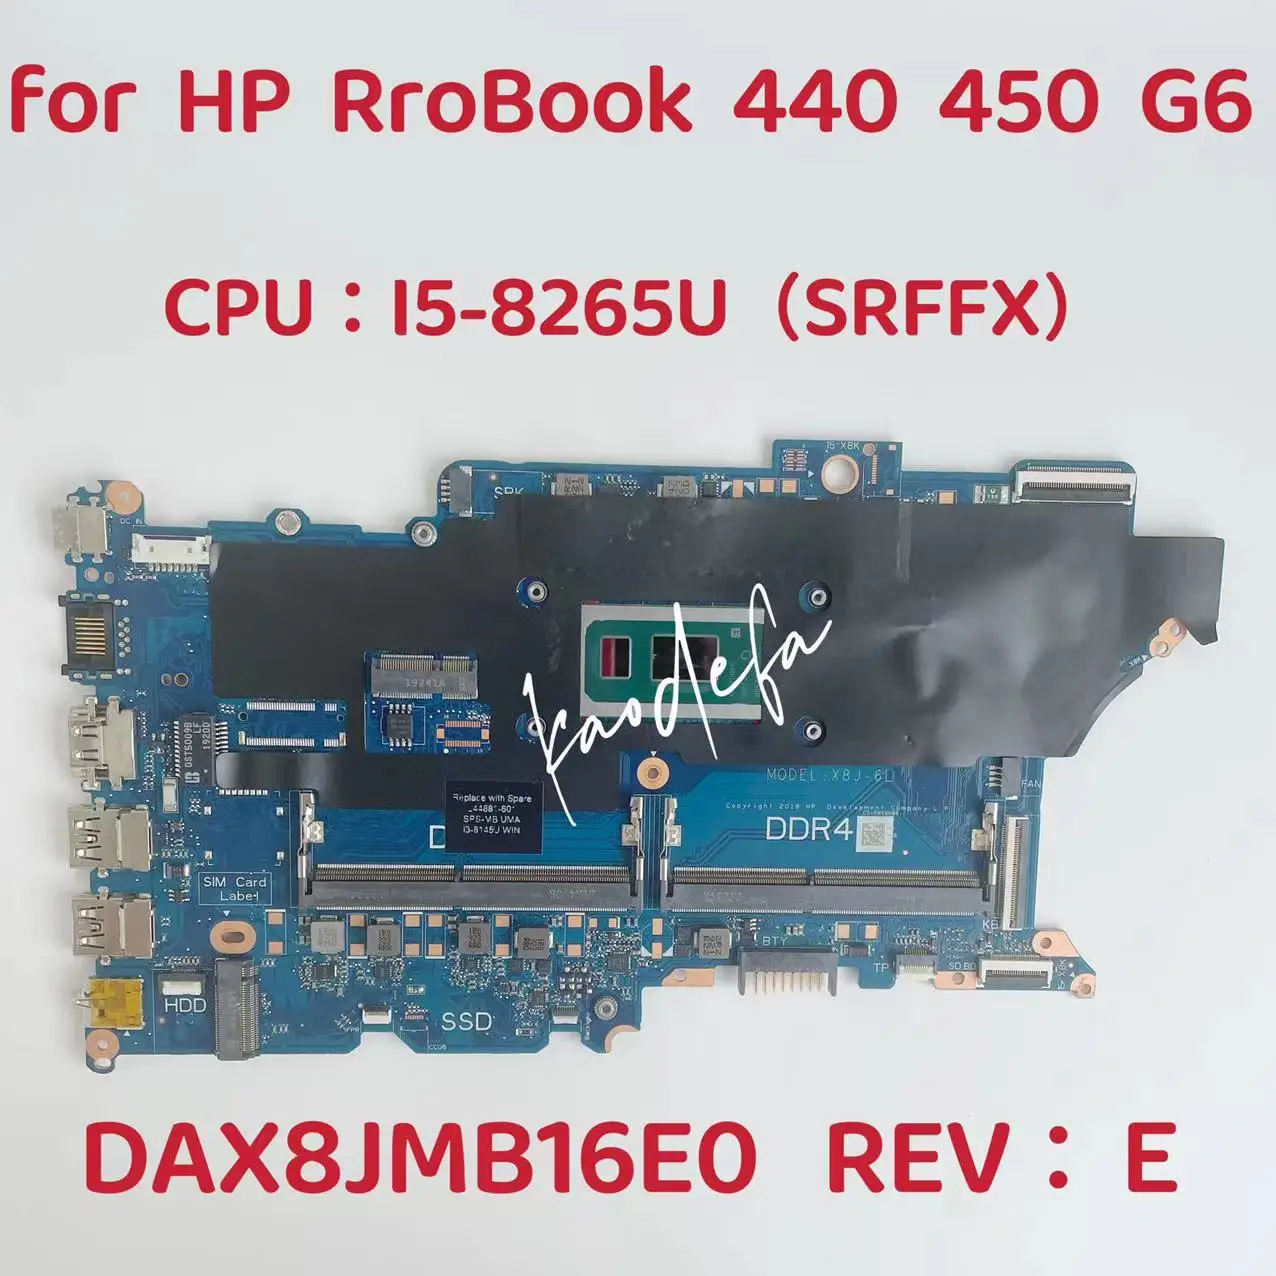 

DAX8JMB16E0 Mainboard For HP ProBook 440 450 G6 Laptop Motherboard CPU: I5-8265U SREJQ SRFFX DDR4 L44883-601 L44883-001 Test OK